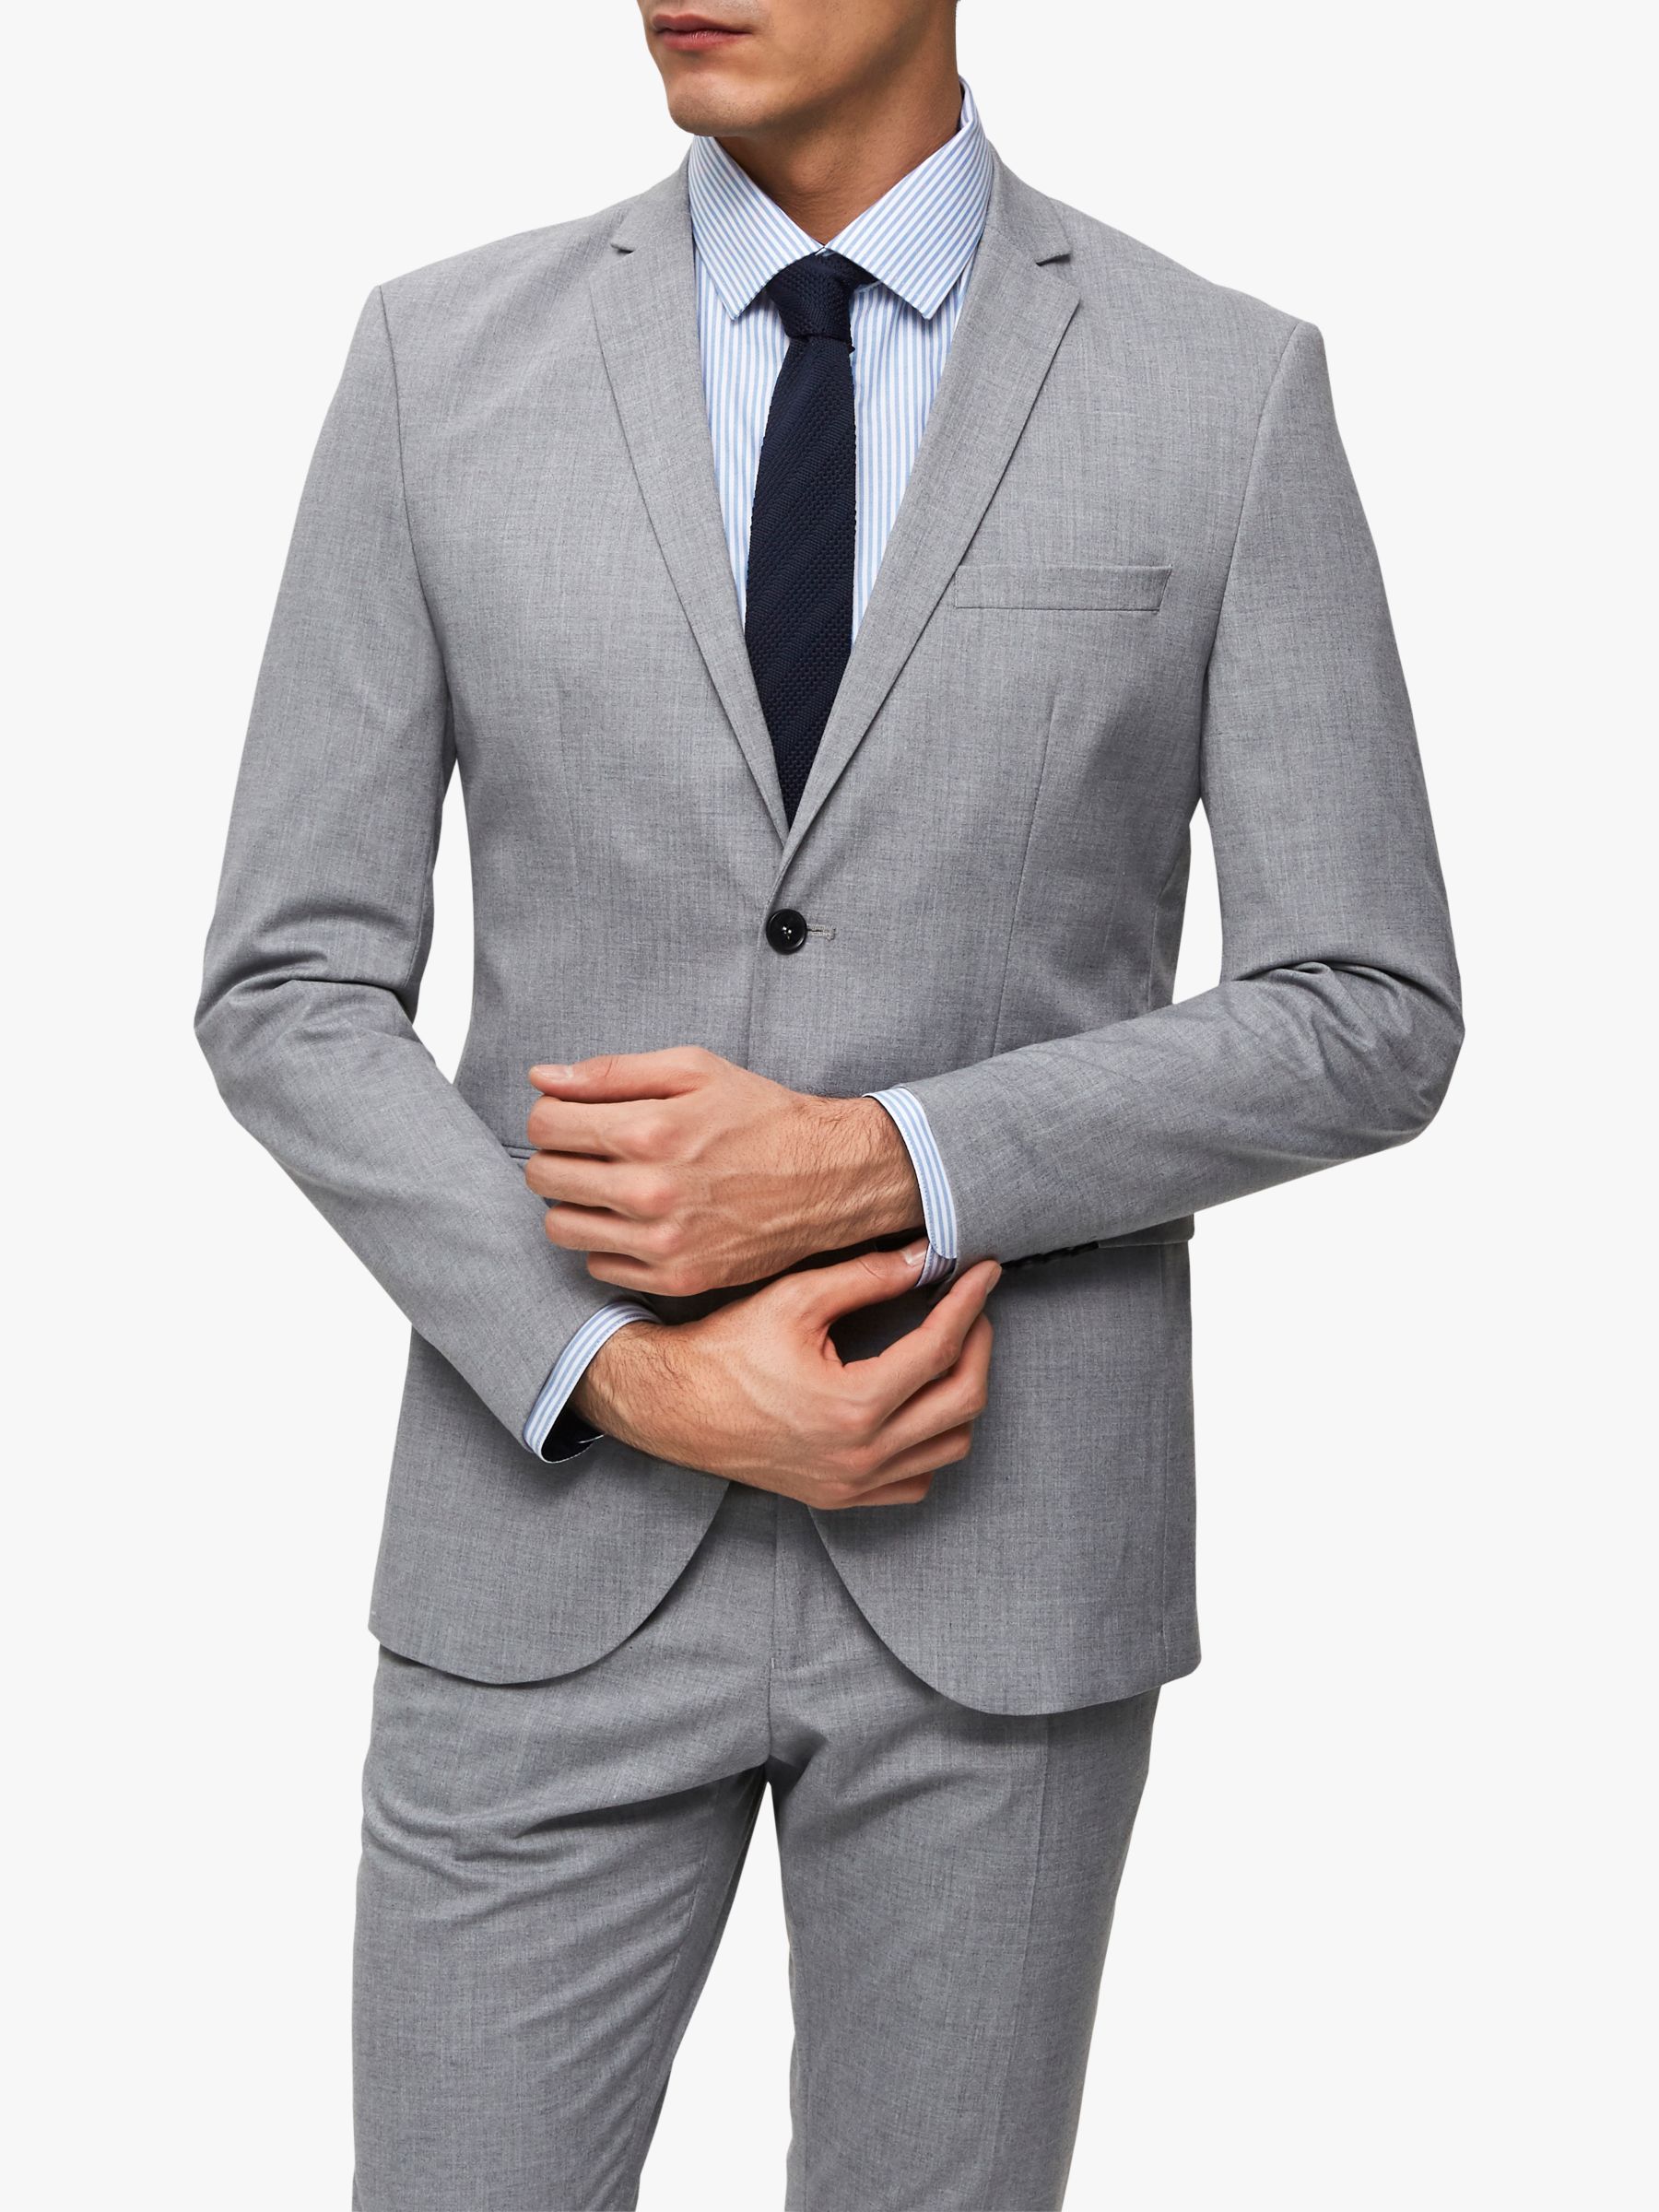 Bekostning Mælkehvid Optøjer SELECTED HOMME Slim Fit Suit Jacket, Light Grey at John Lewis & Partners